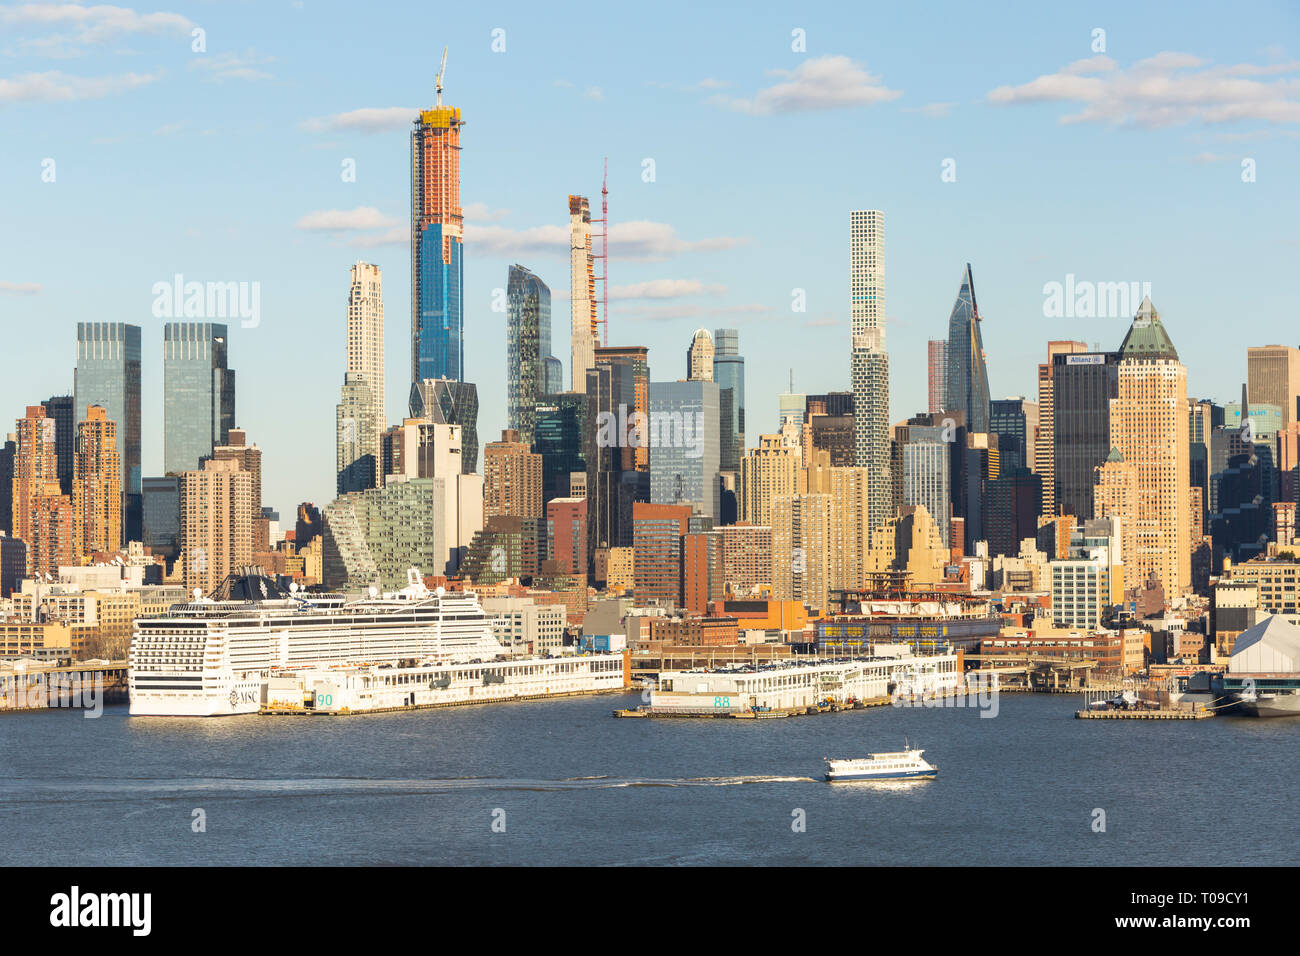 Teil der Entwicklung der Mid-town Manhattan Skyline, einschließlich supertall Wohn- Hochhäuser auf der West 57th Street, New York City. Stockfoto